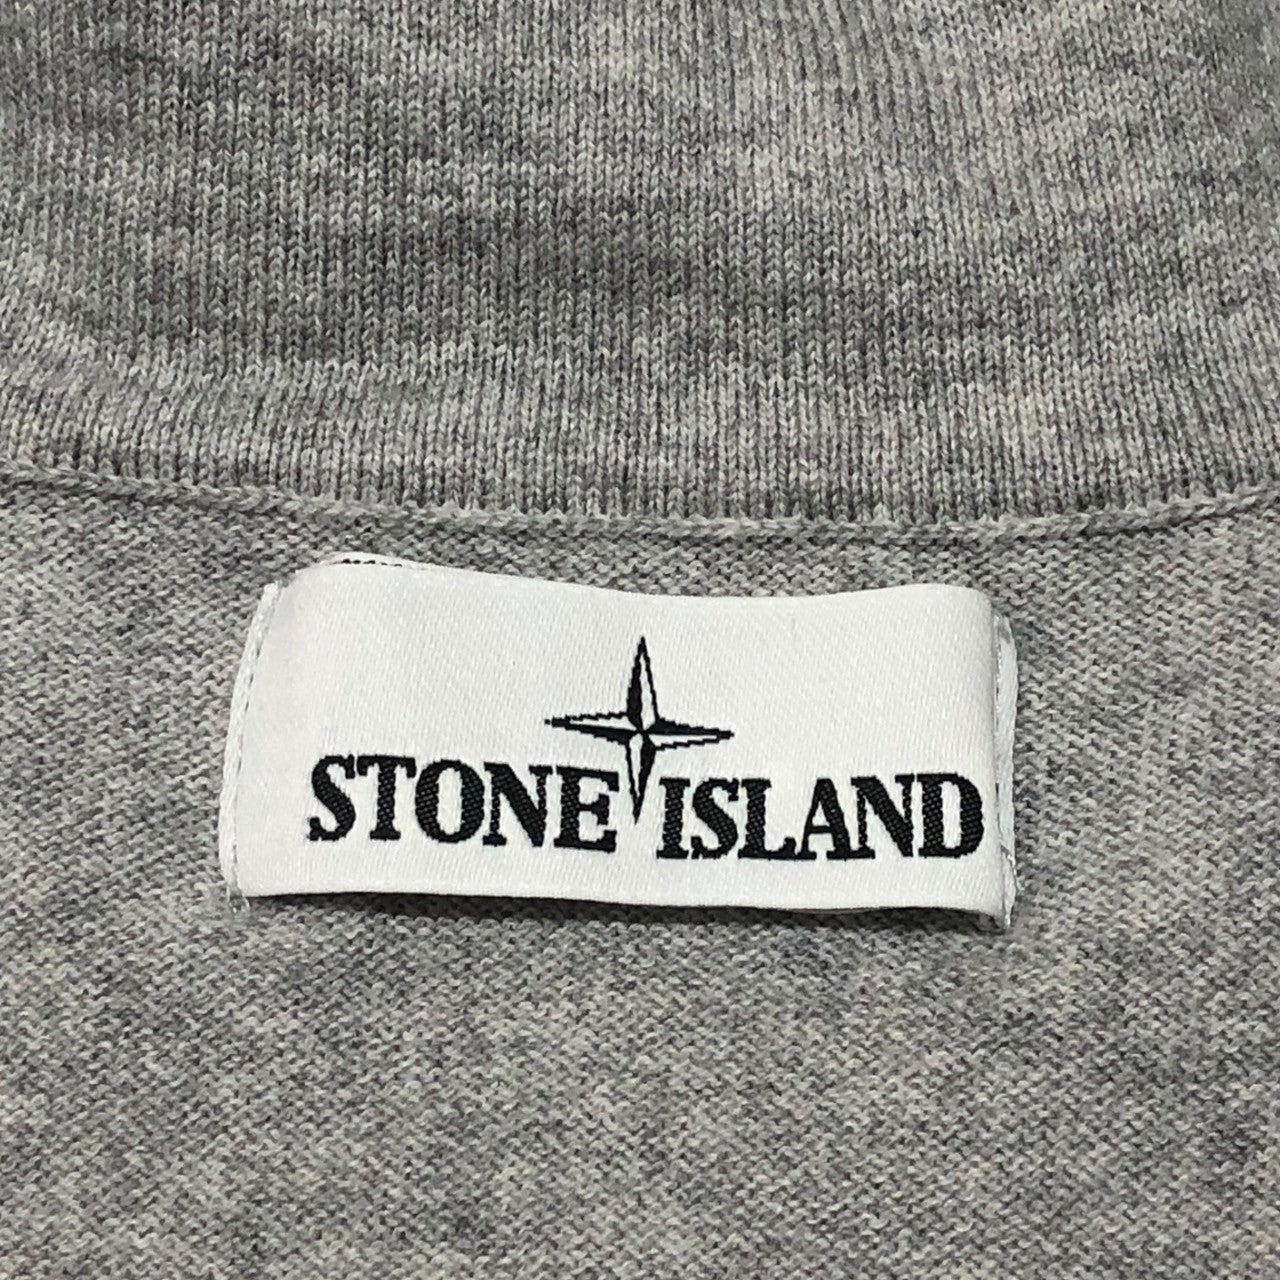 STONE ISLAND(ストーンアイランド) 18SS driver's knit ドライバーズニット ジップアップ ニット カーディガン 17-50612 SIZE M ライトグレー